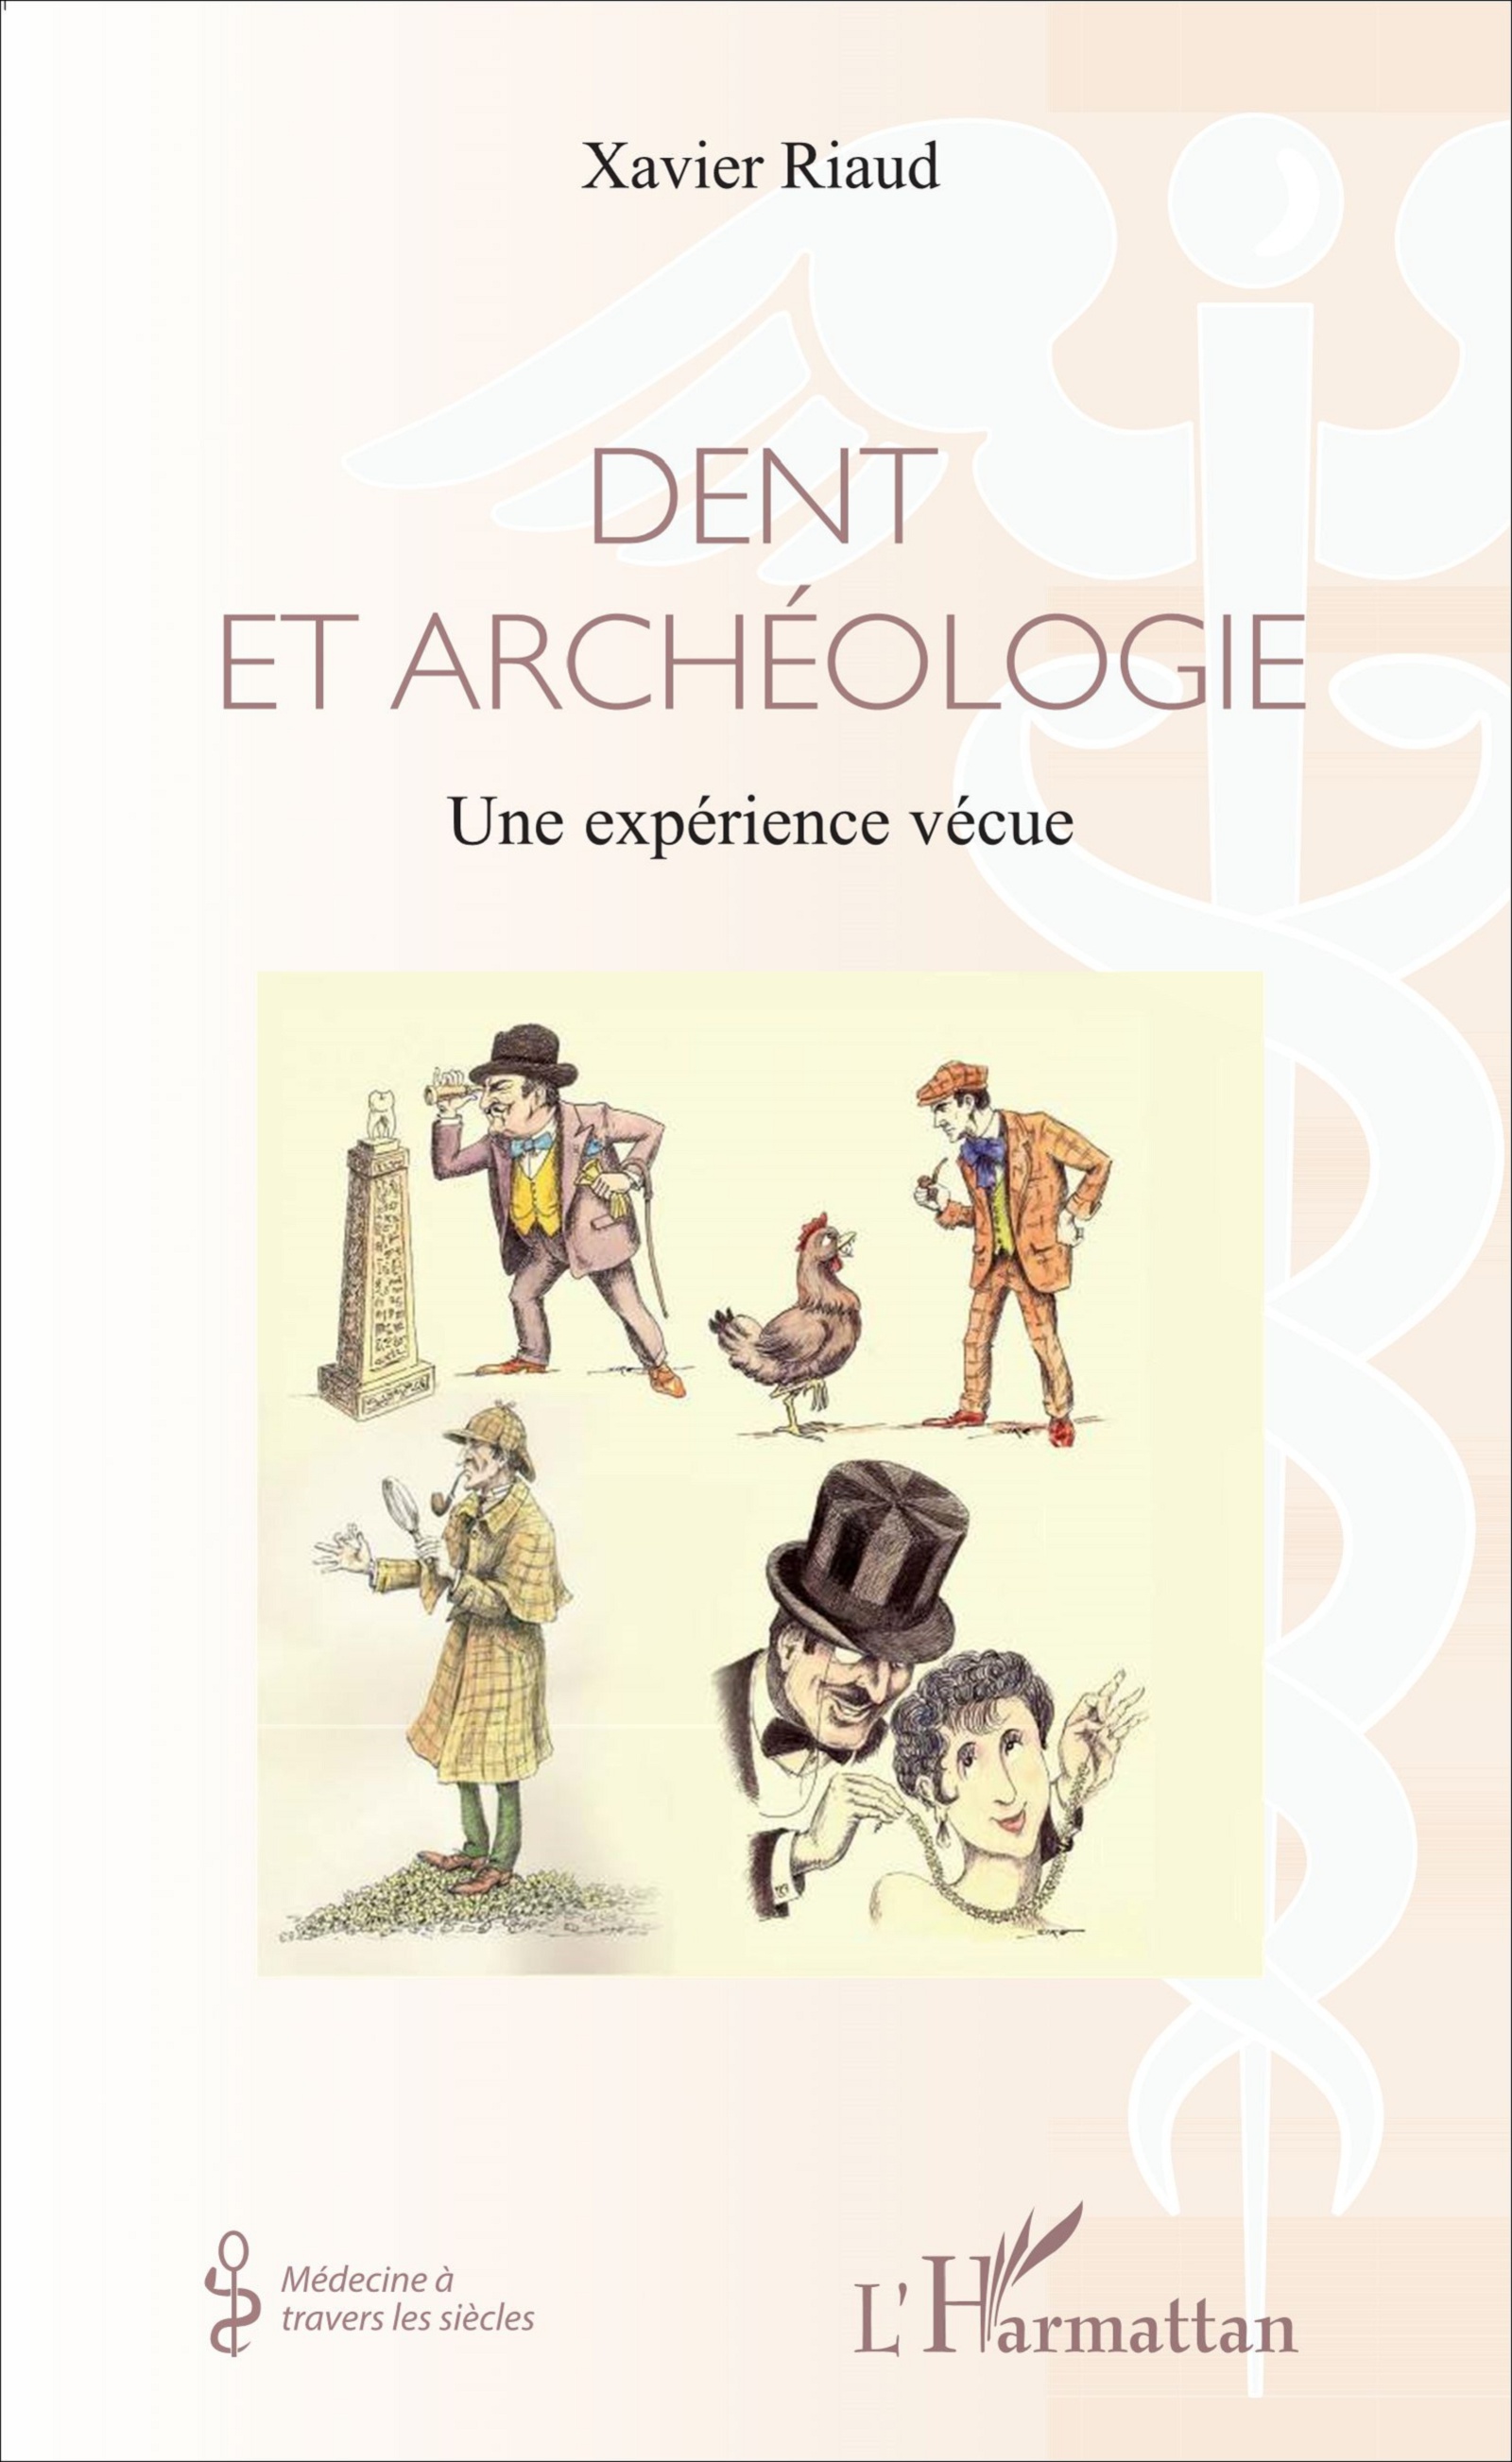 Dent et archéologie. Une expérience vécue, 2017, 110 p.